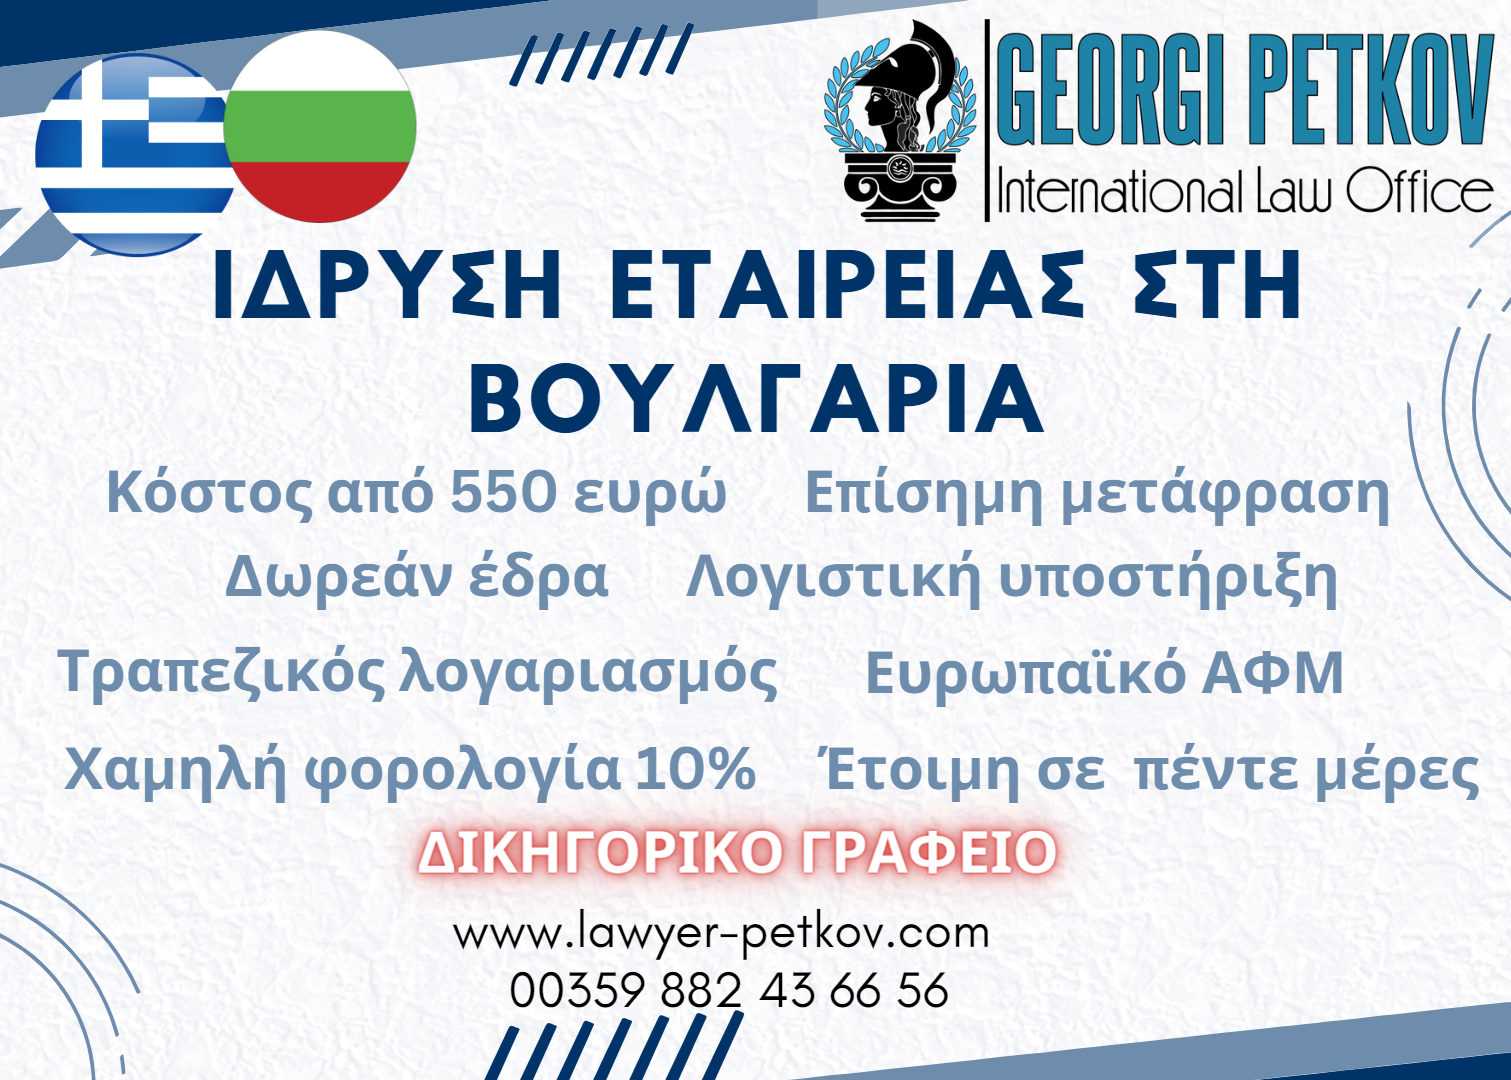 ίδρυση εταιρείας στη Βουλγαρία